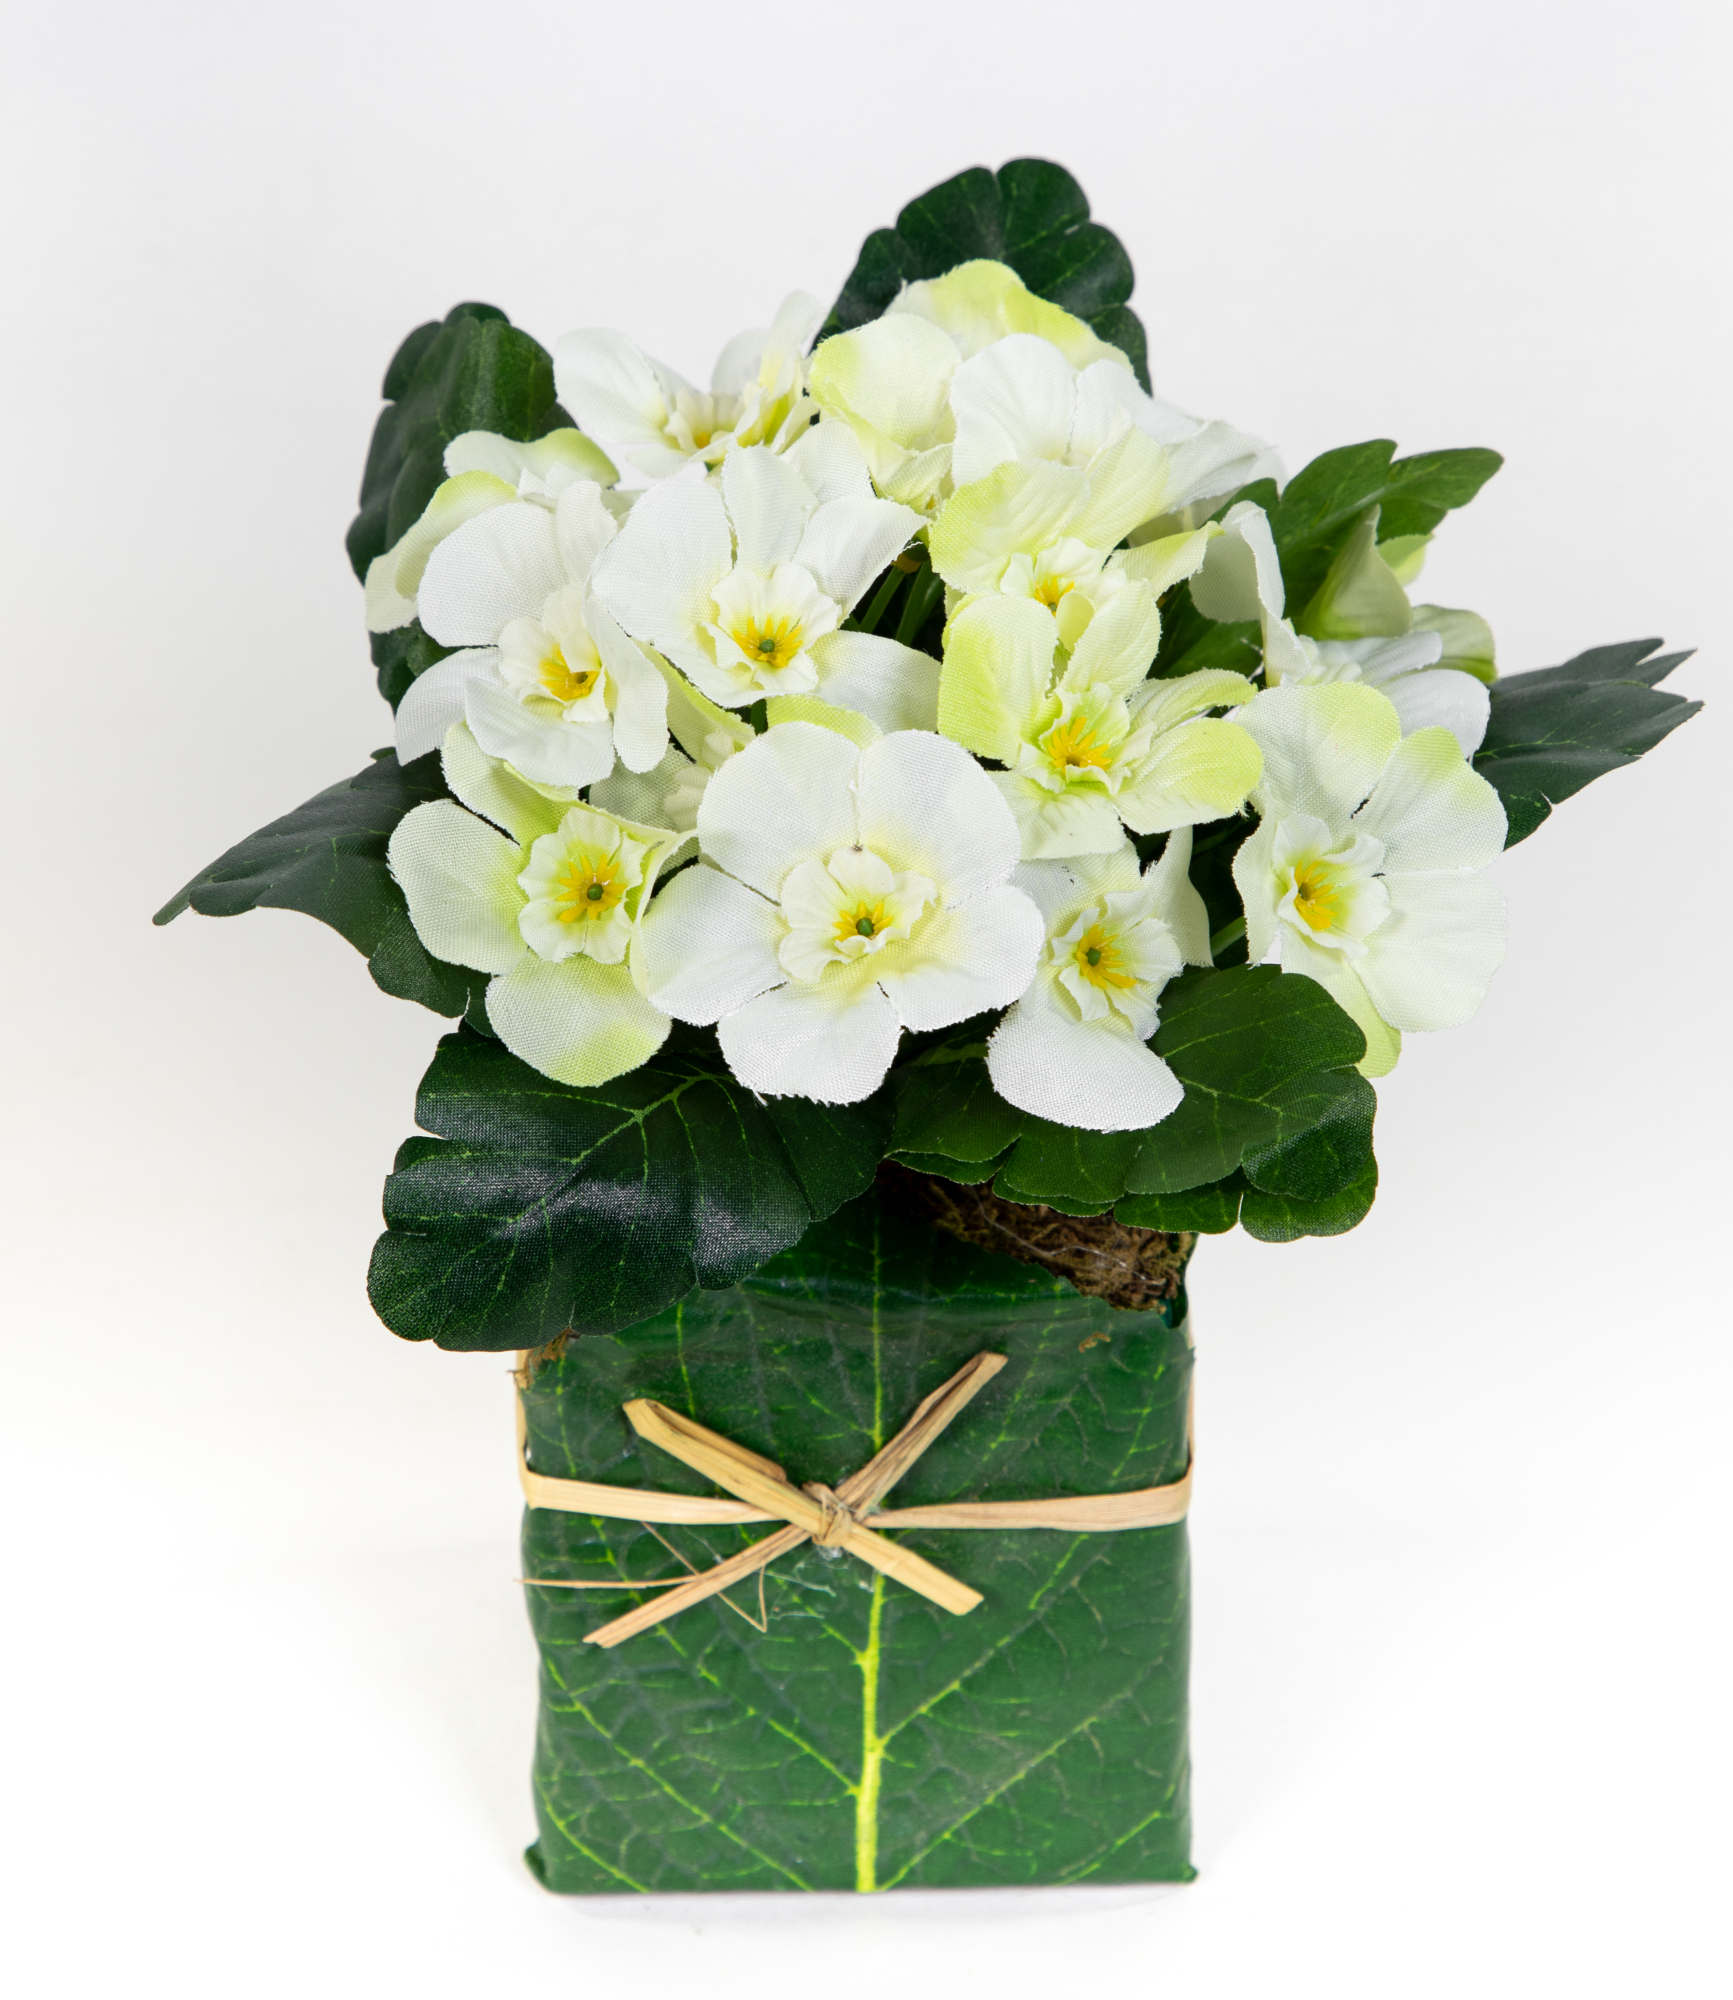 Künstliche Primel im Blatttopf 28cm weiß PM künstliche Pflanzen Primelbusch Seidenblumen Kunstblumen Kunstpflanzen